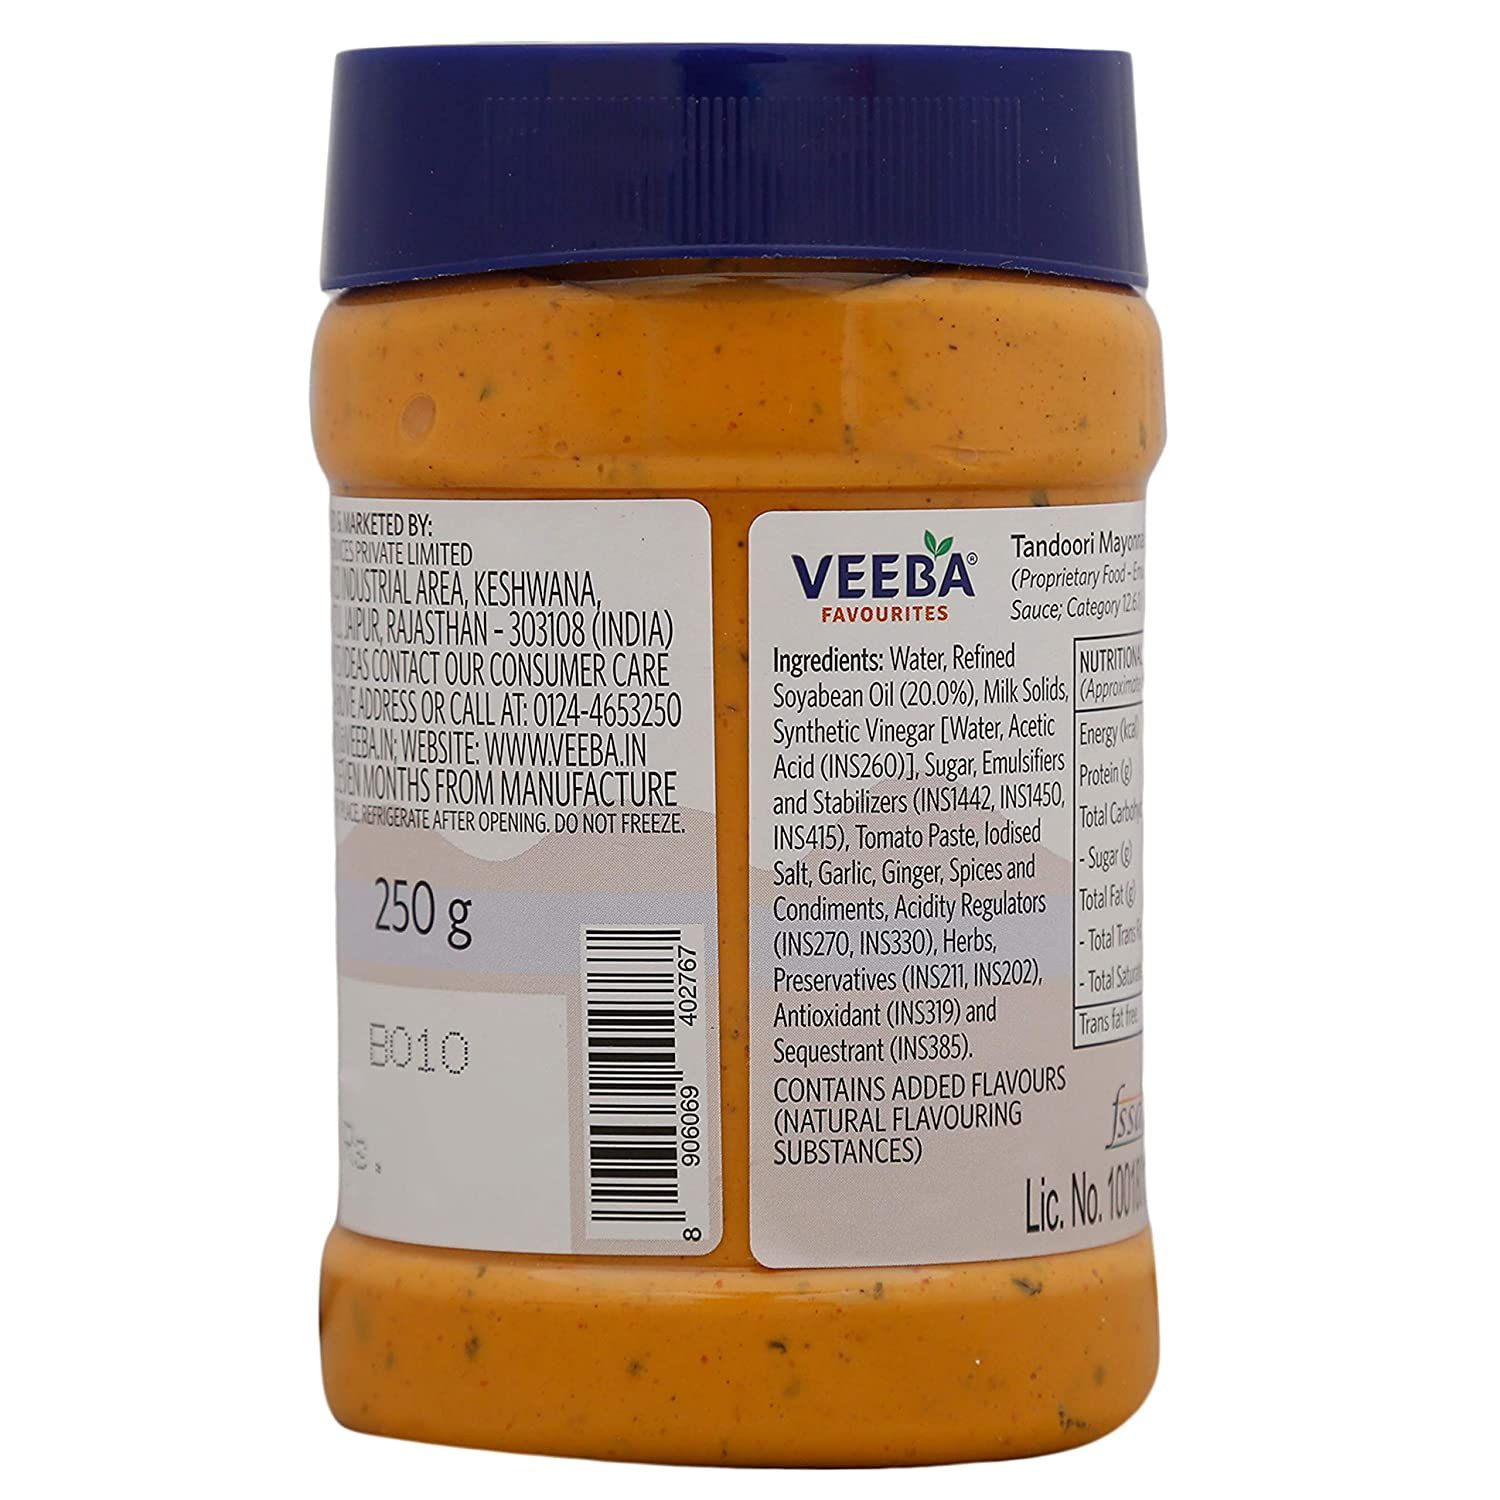 Veeba - Tandoori Mayonnaise Image